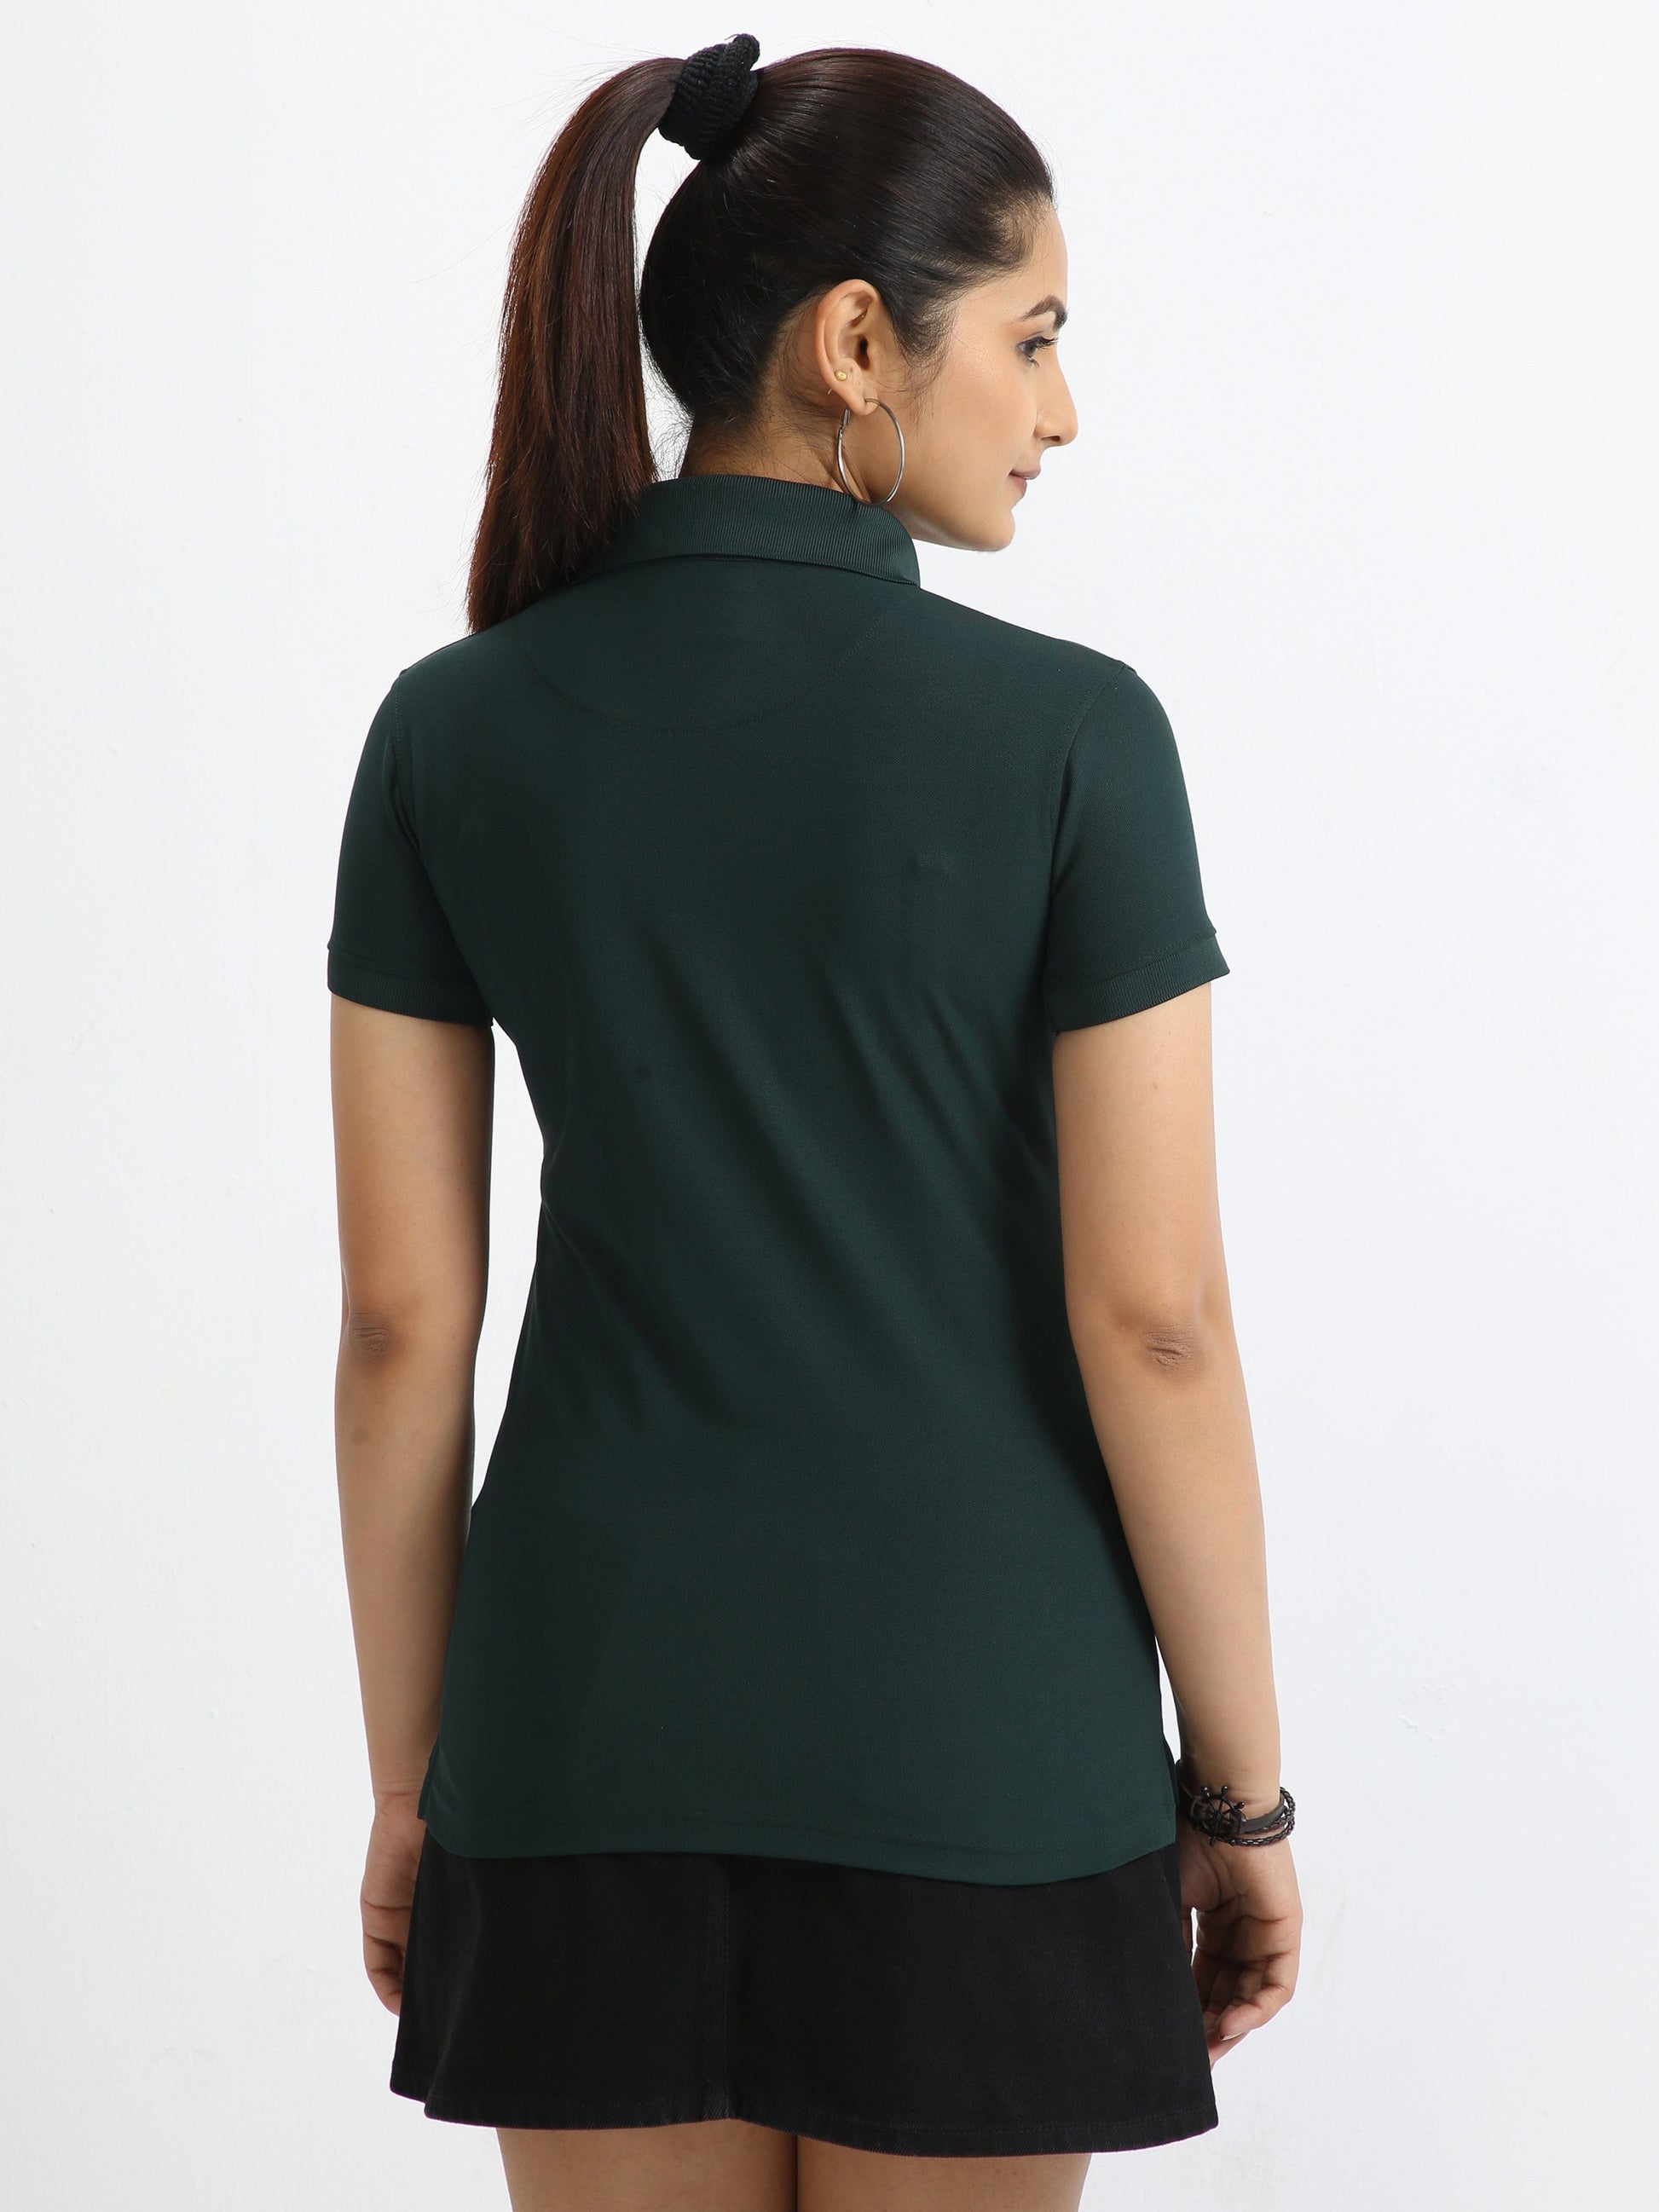 Pine Green Women's Polo T-shirt